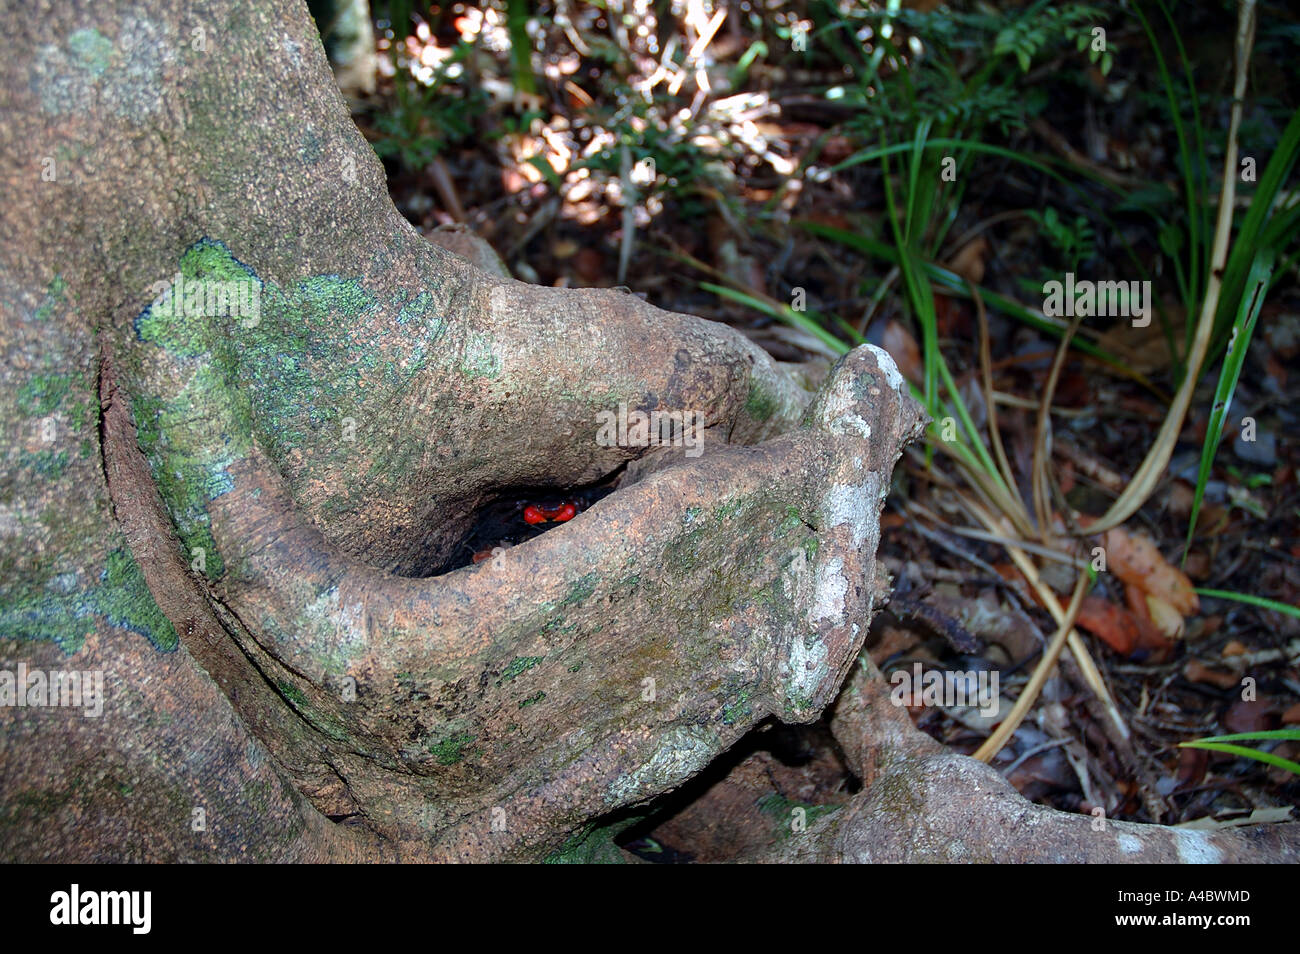 Crabe rouge dans le trou du tronc de l'arbre dans de rares forêts littorales environnement Parc National de la péninsule de Masoala Madagascar Banque D'Images